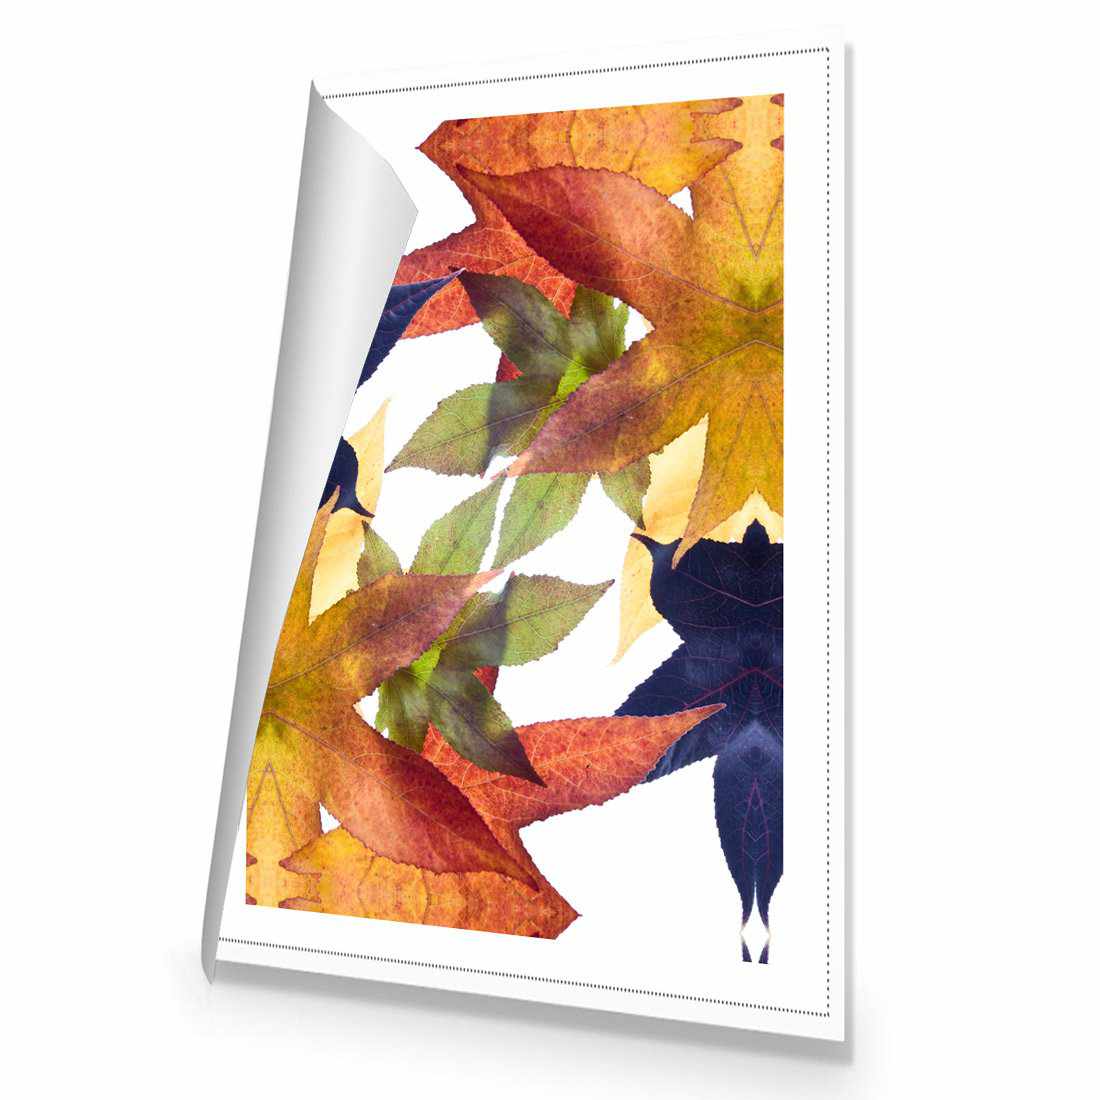 Leaf Kaleidoscope Canvas Art-Canvas-Wall Art Designs-45x30cm-Rolled Canvas-Wall Art Designs